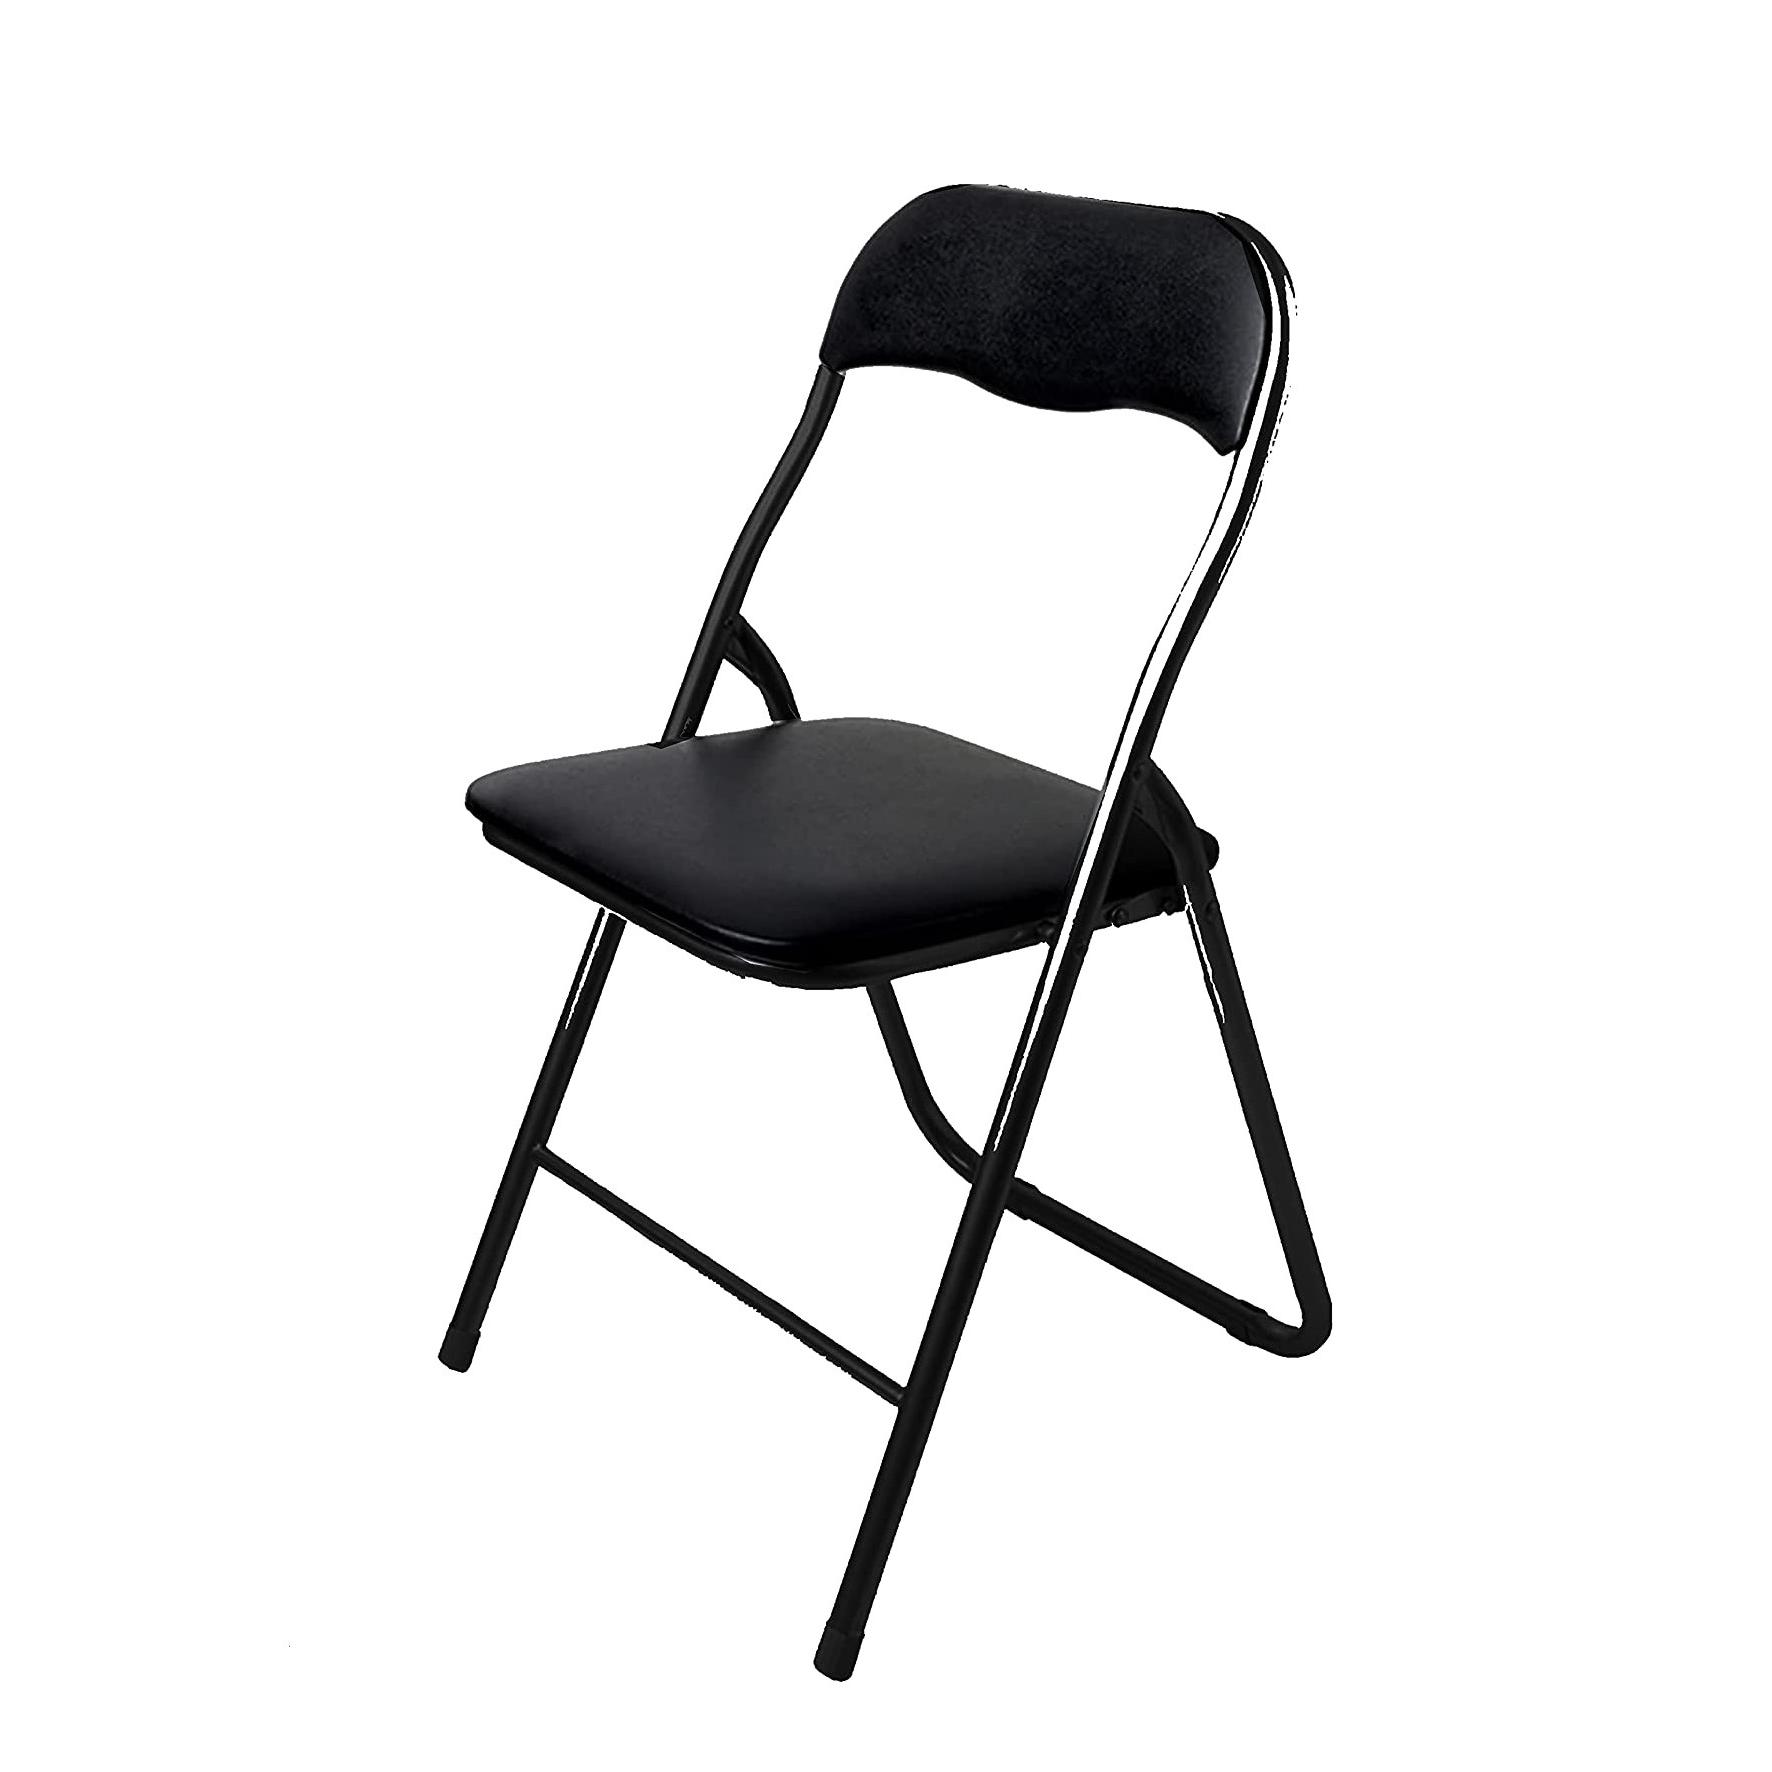 Comparar greatool sillas plegables, 40x48x80cm, 1/2/4 unidades, acolchadas,  aluminio, silla plegable con respaldo negro talla 1 productos de más de  25,000 tiendas